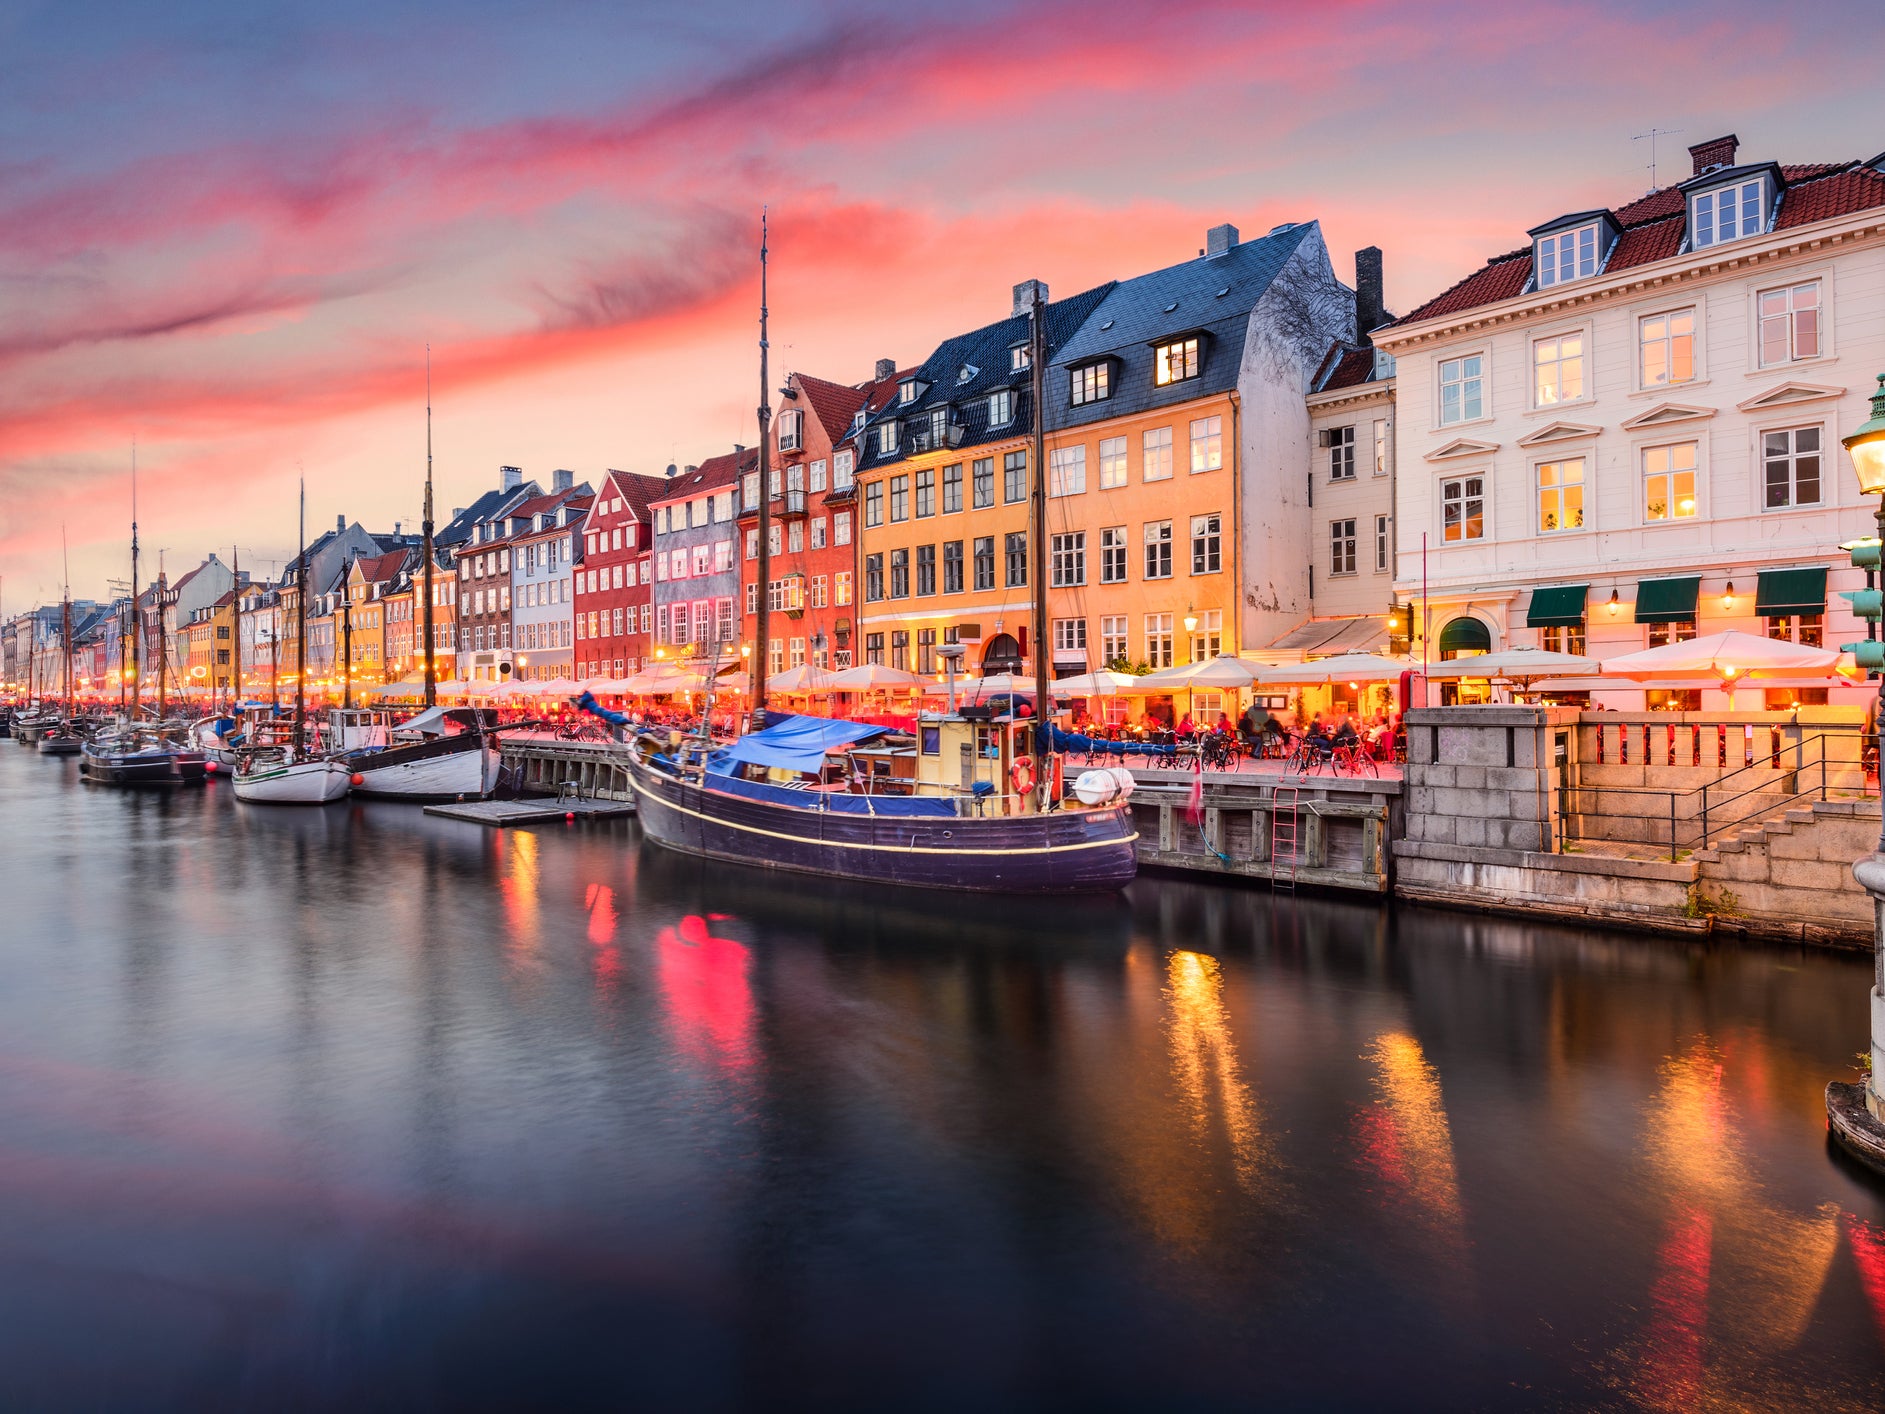 Copenhagen in Denmark is amber-listed